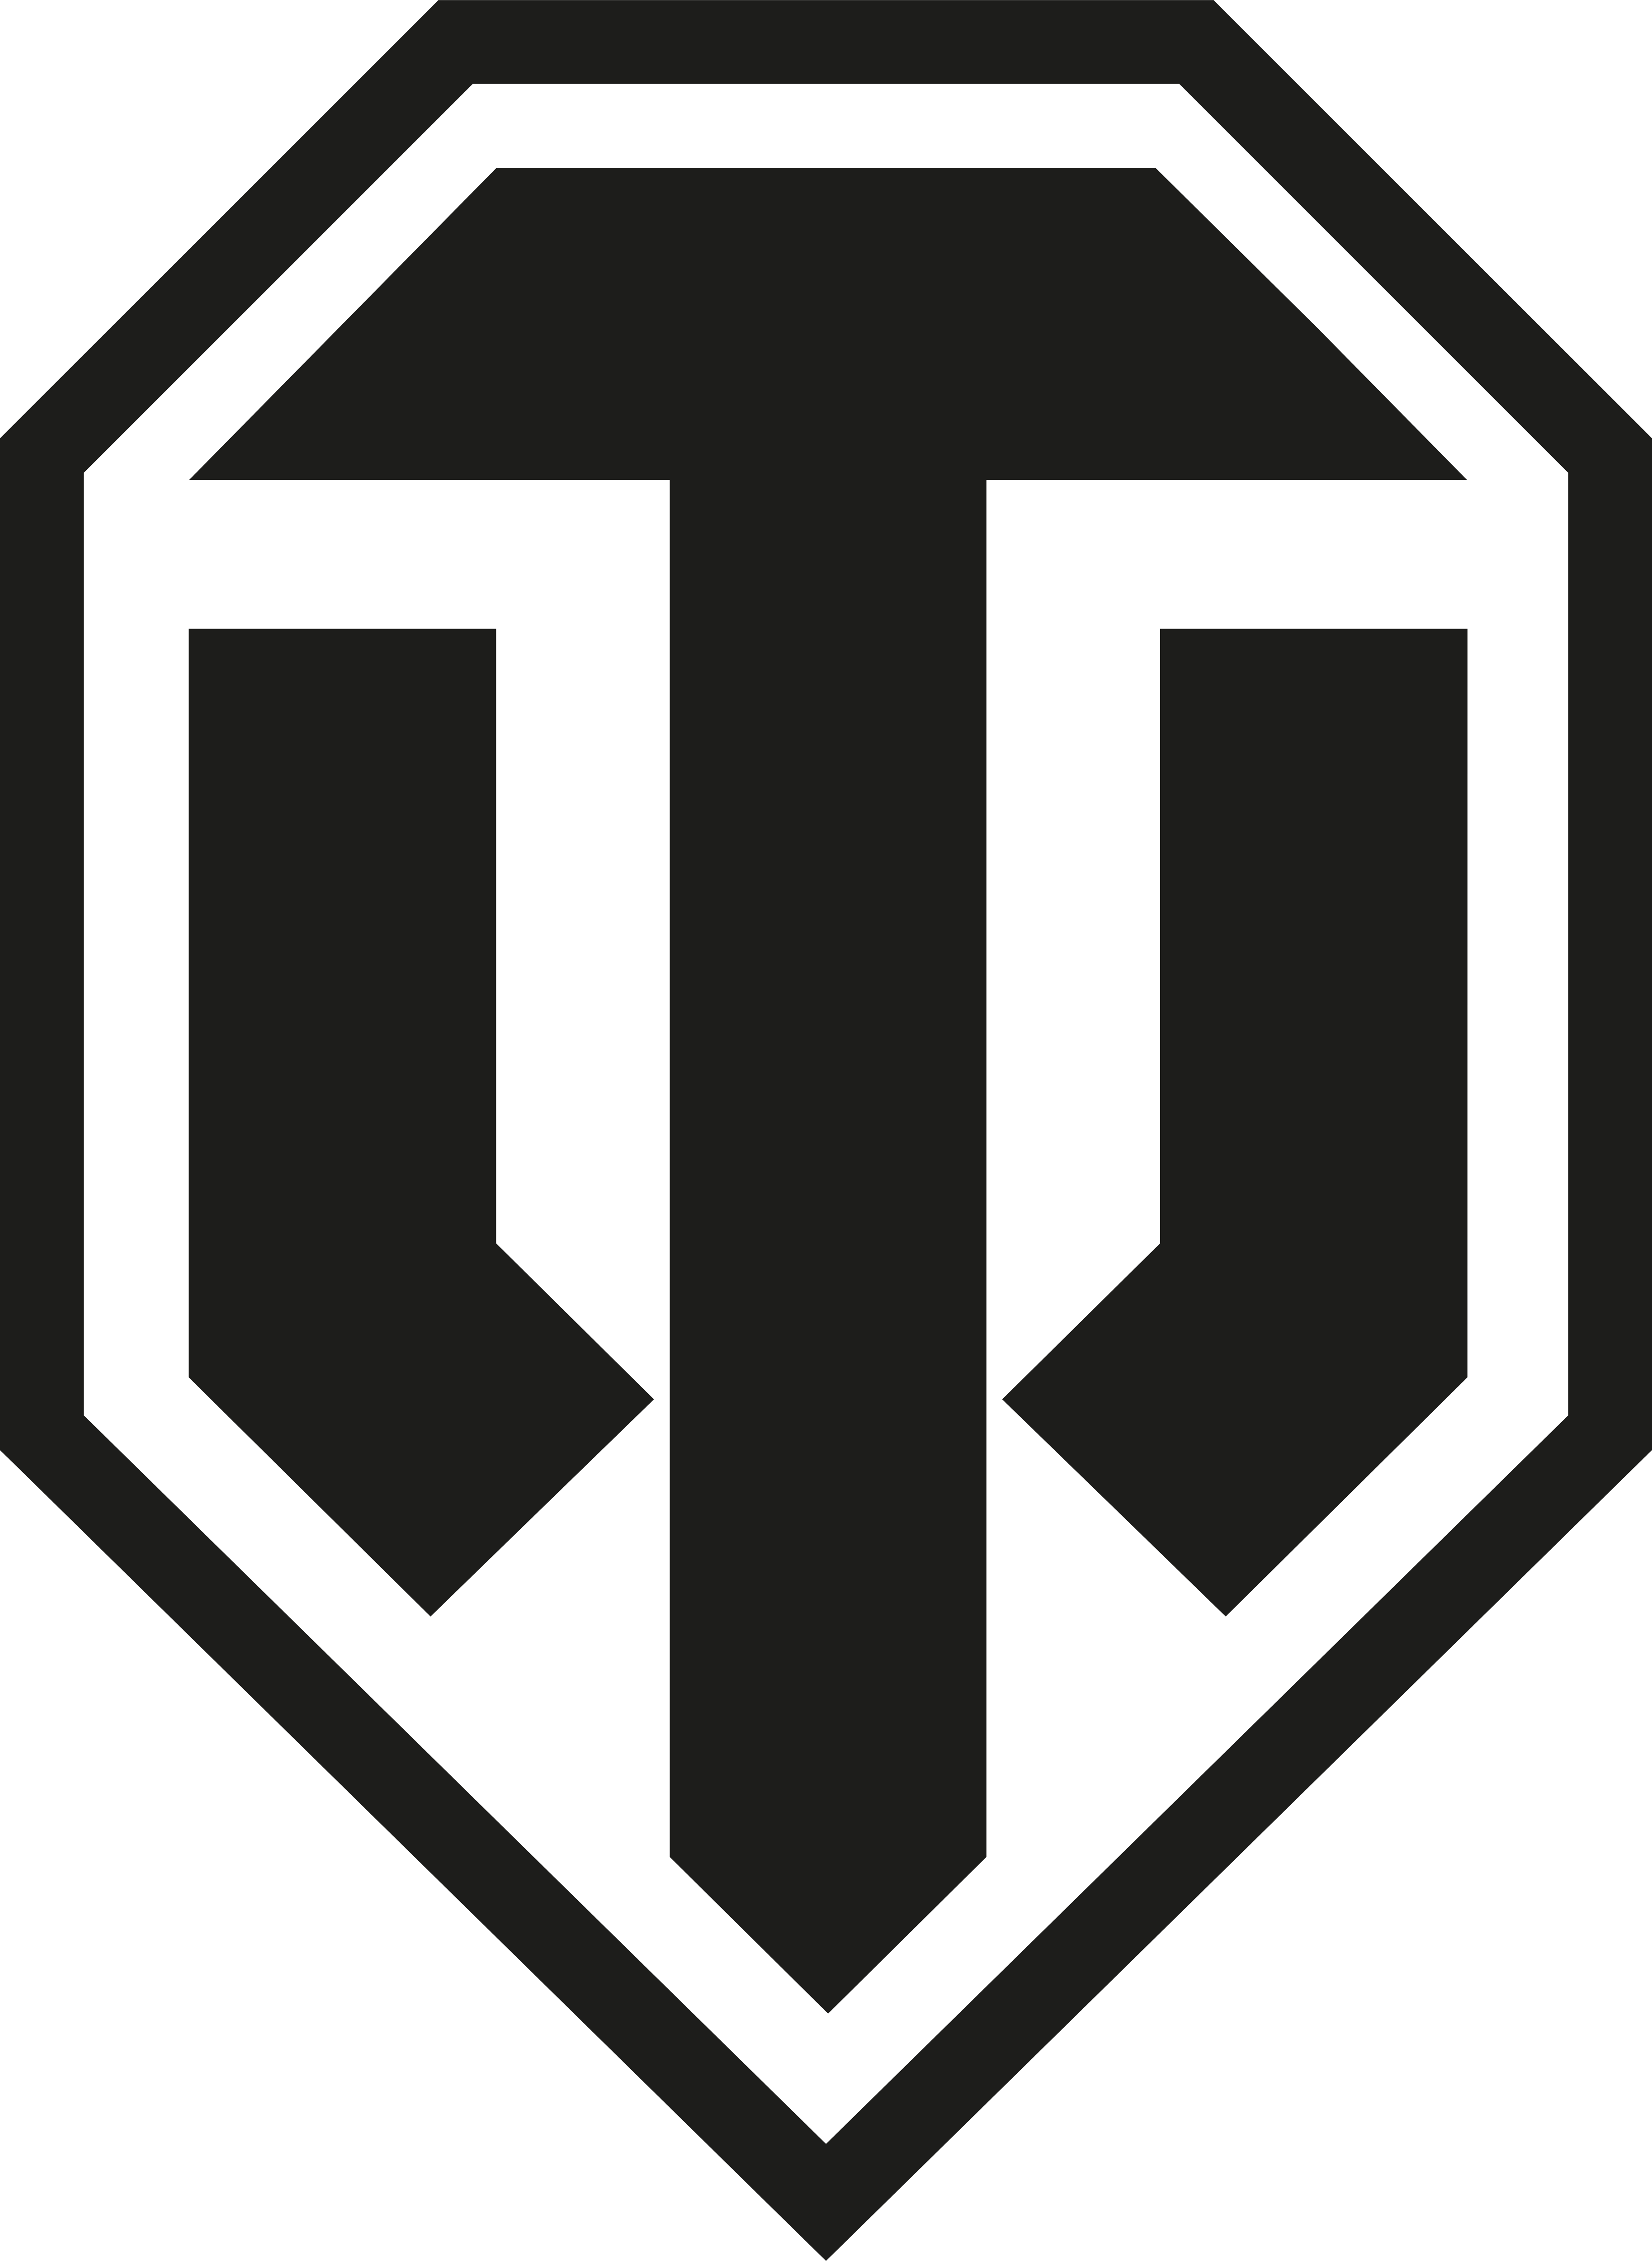 World of Tanks – Logos Download